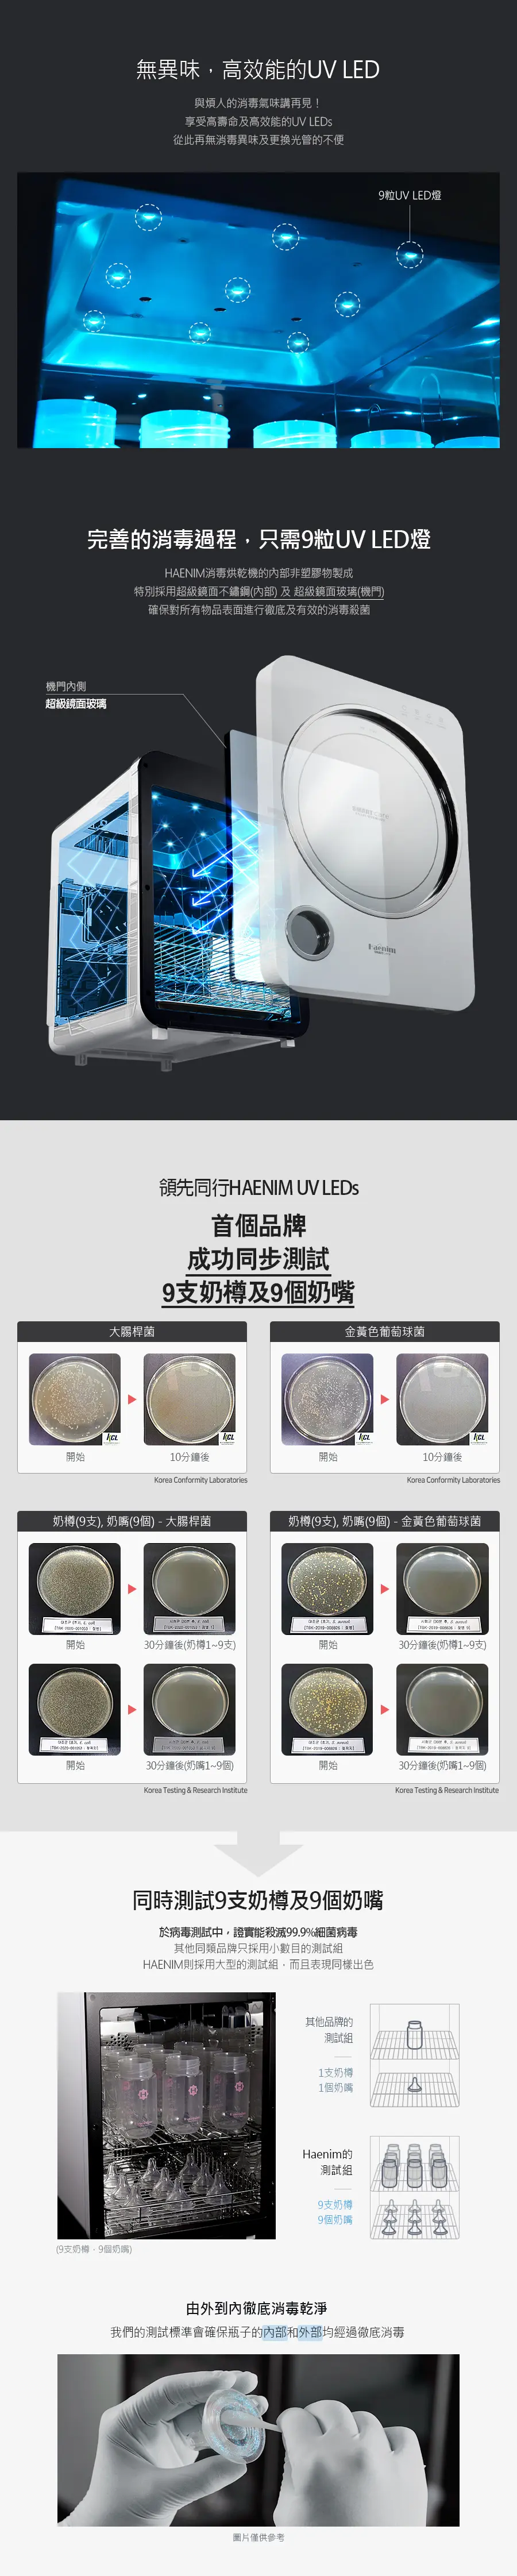 Haenim喜临 第3代紫外线UV消毒烘乾机(LED版) 